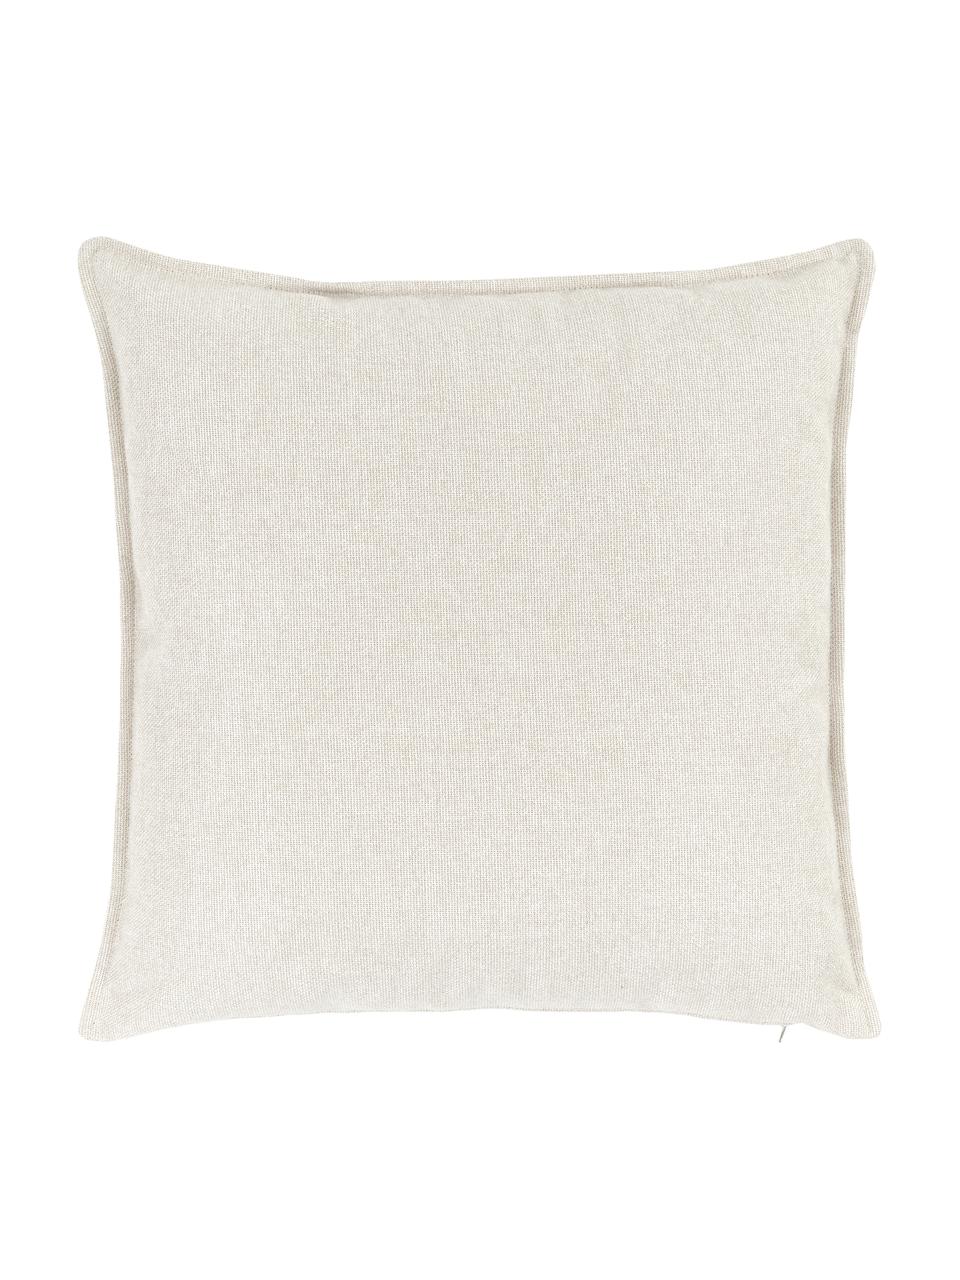 Sofa-Kissen Lennon in Beige, Bezug: 100% Polyester, Webstoff Beige, B 60 x L 60 cm